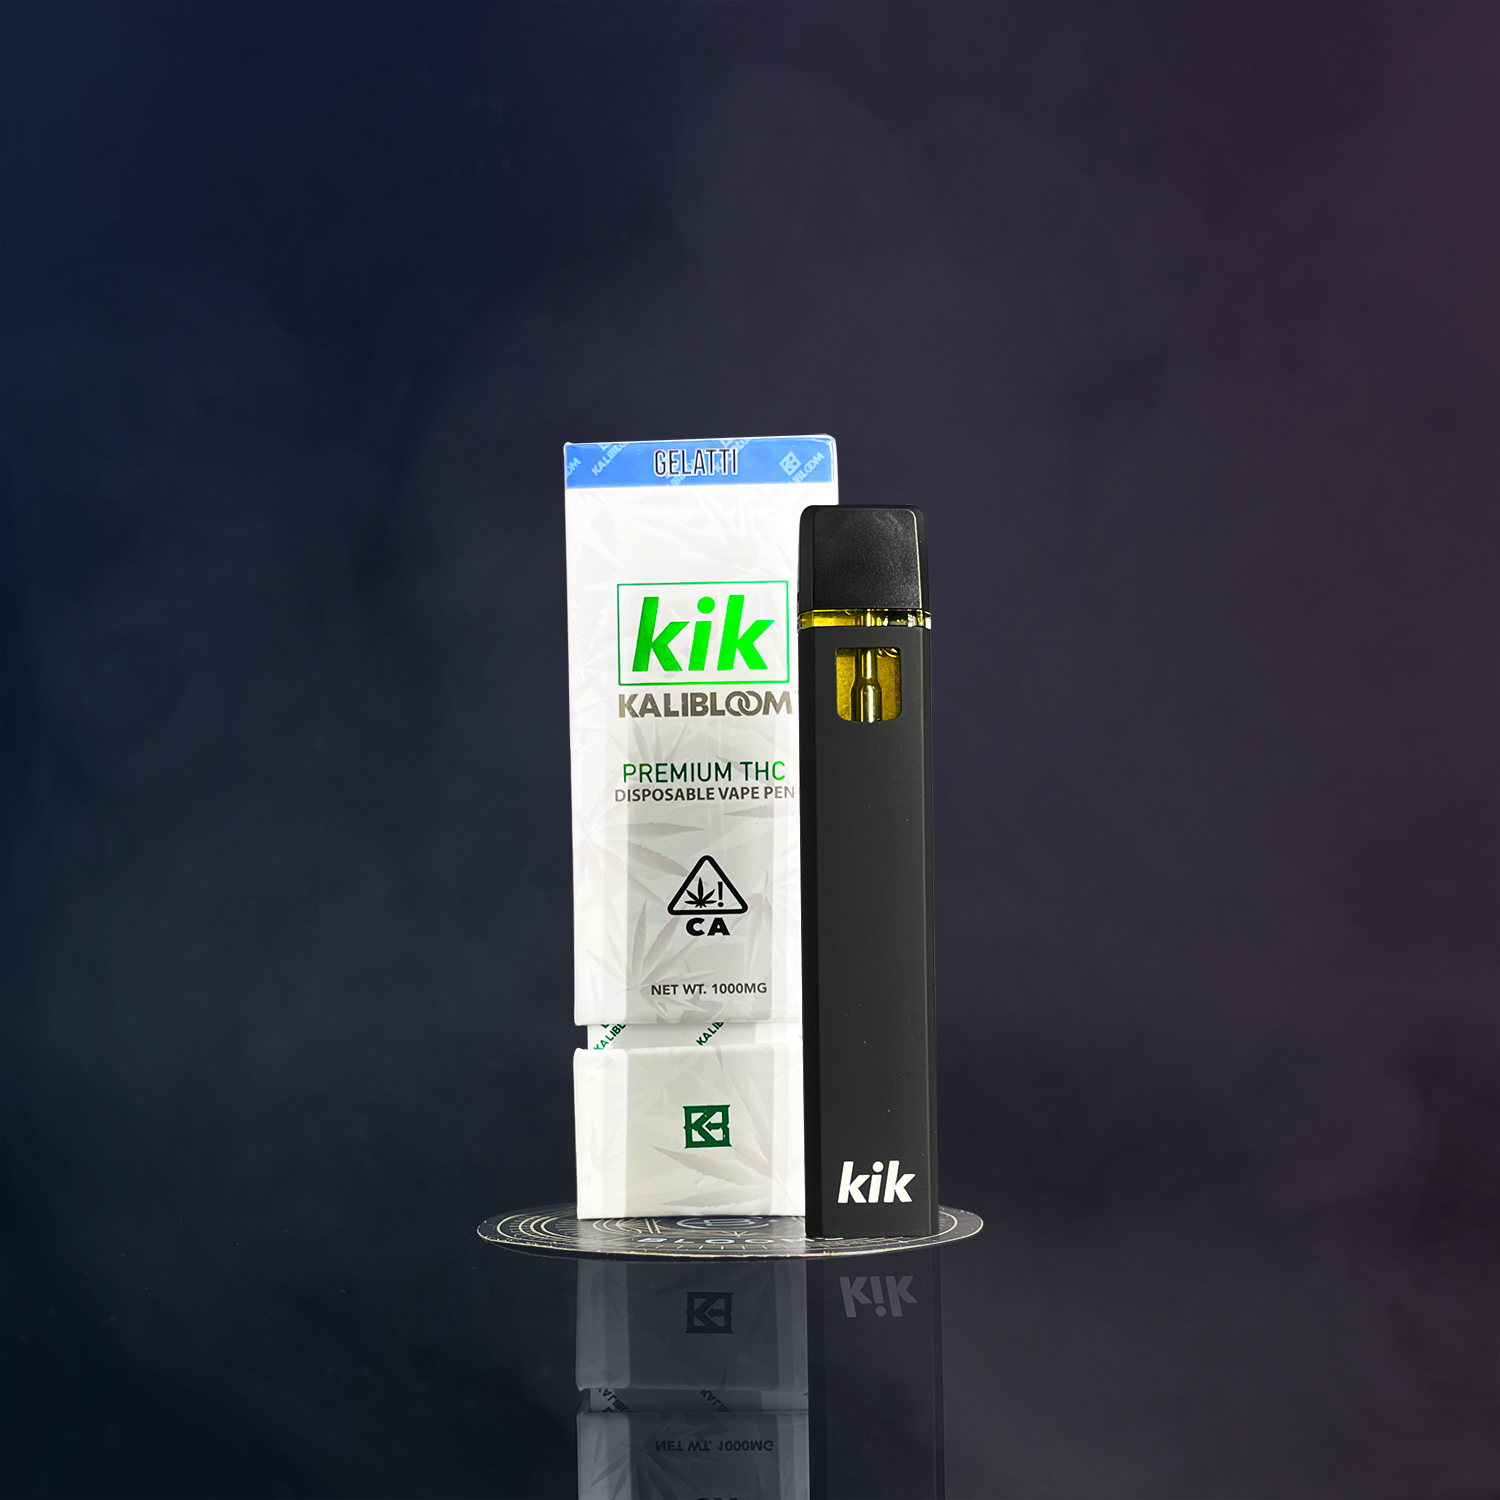 Kik Delta 8 Disposable Vape